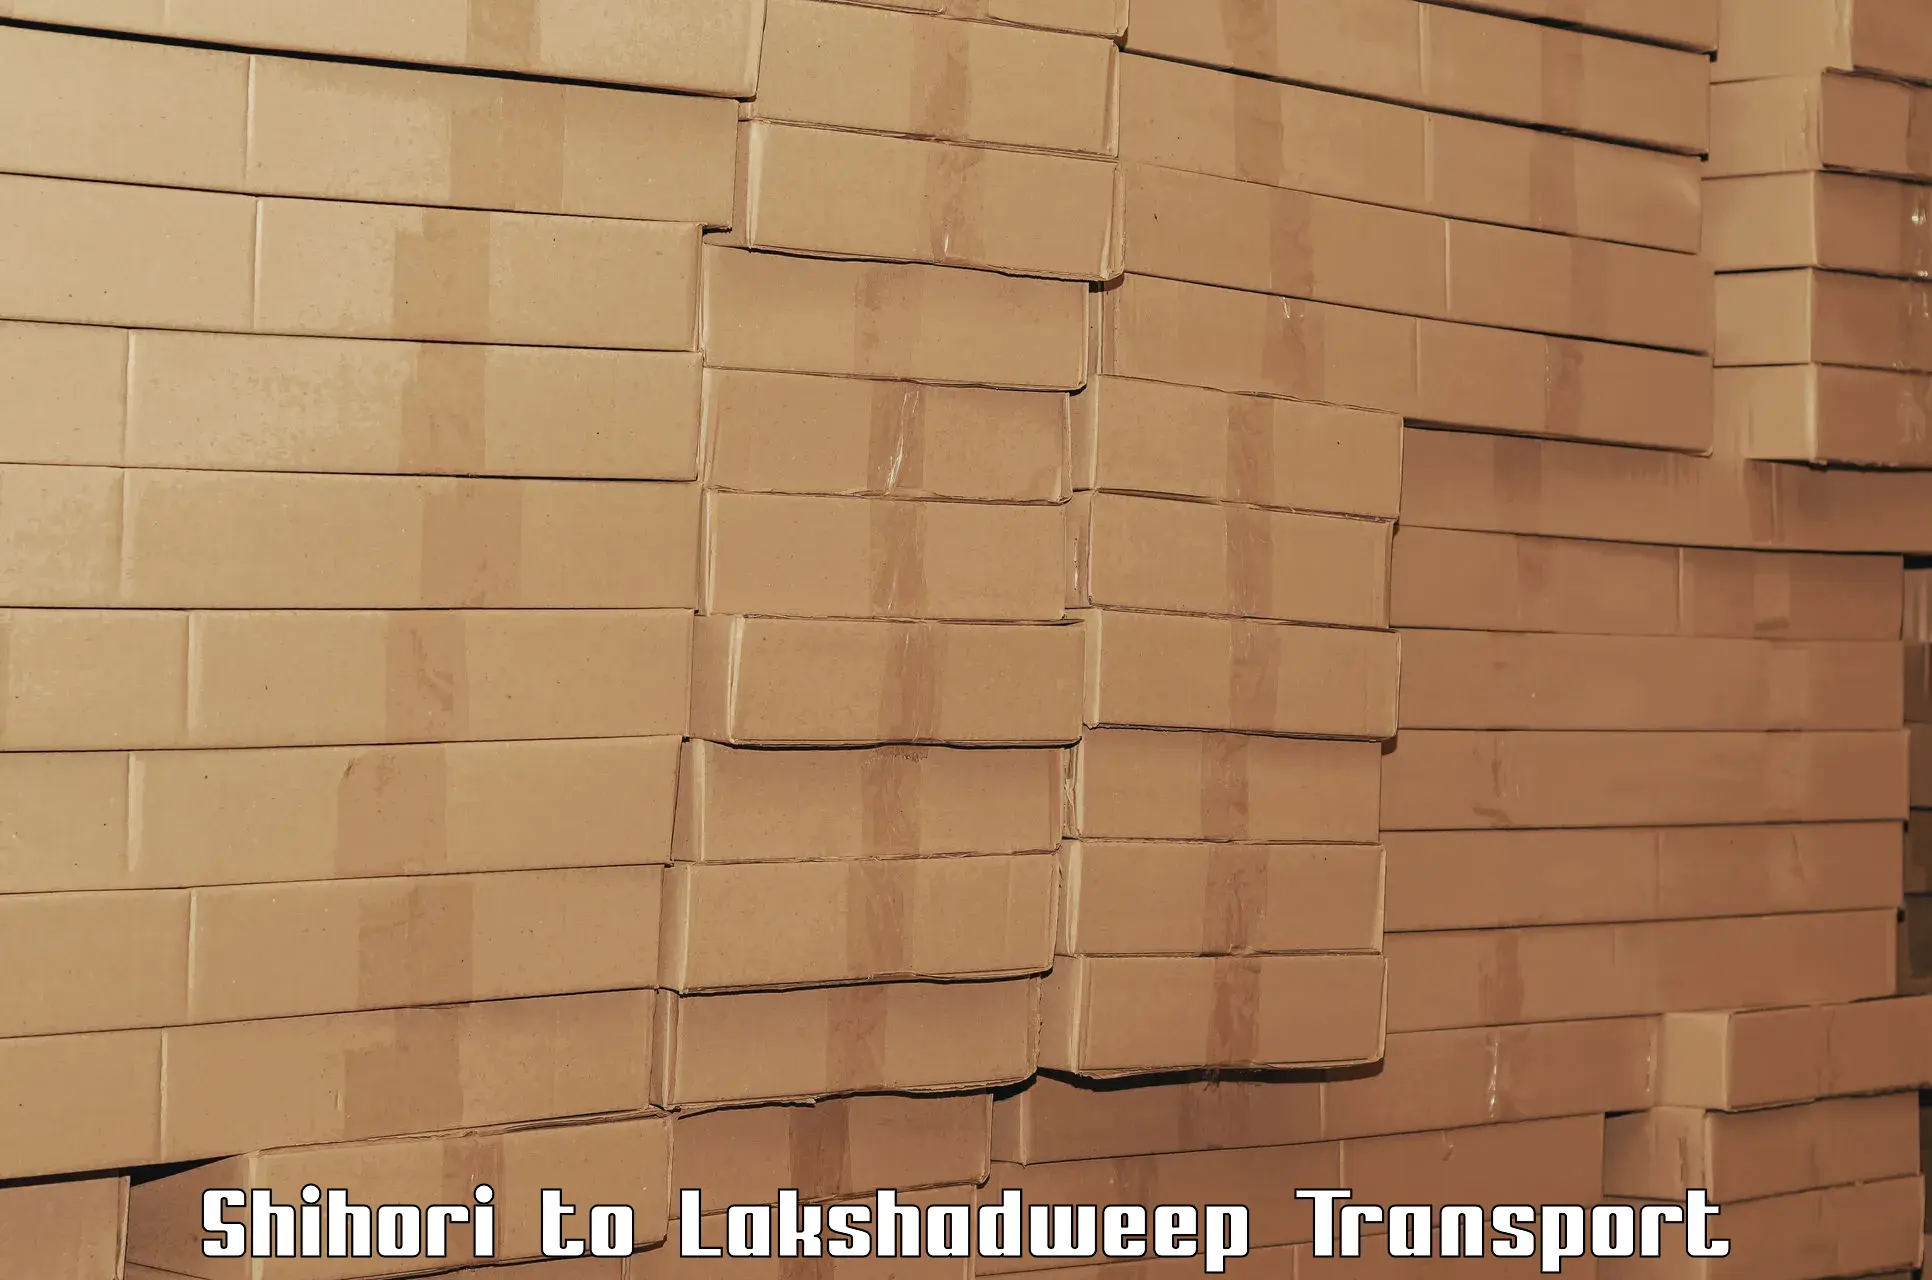 Cargo transport services Shihori to Lakshadweep